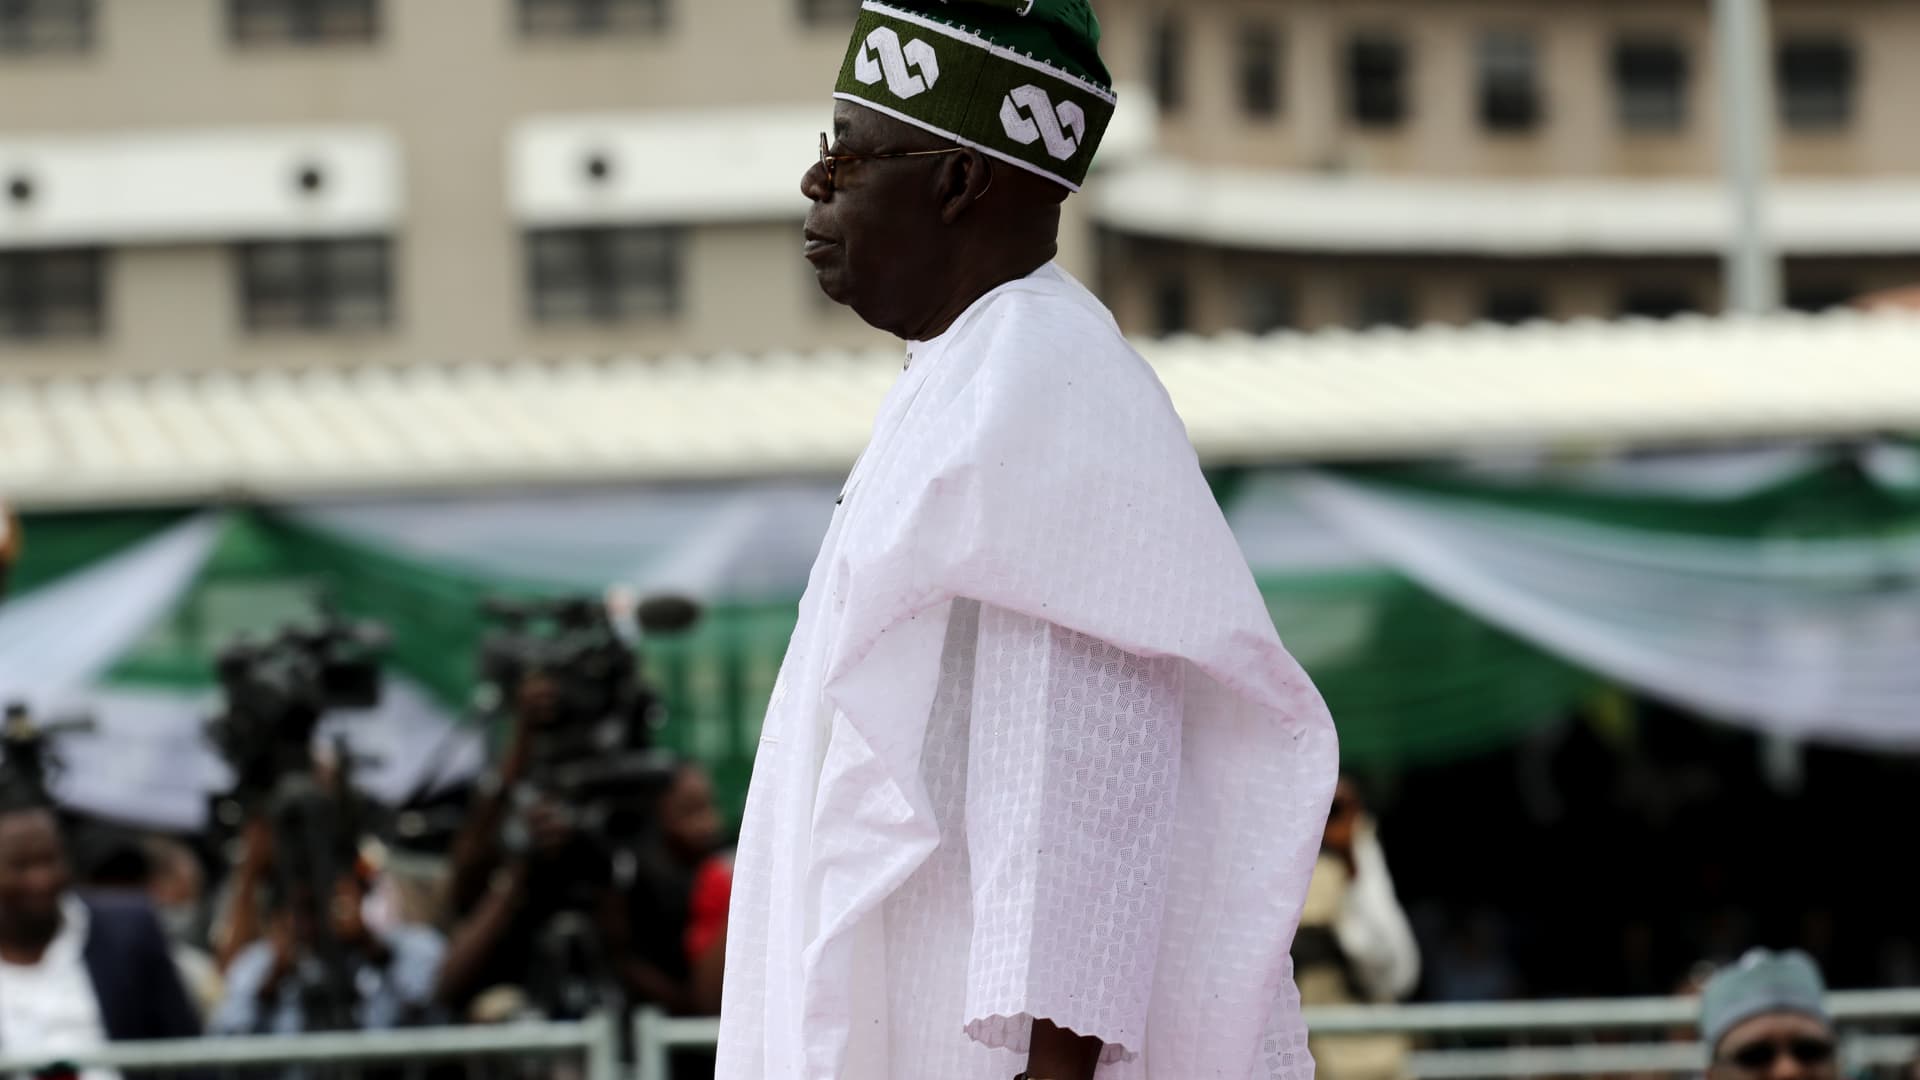 Le nouveau président nigérian s’engage à relancer l’économie alors qu’il hérite d’un « pays brisé »